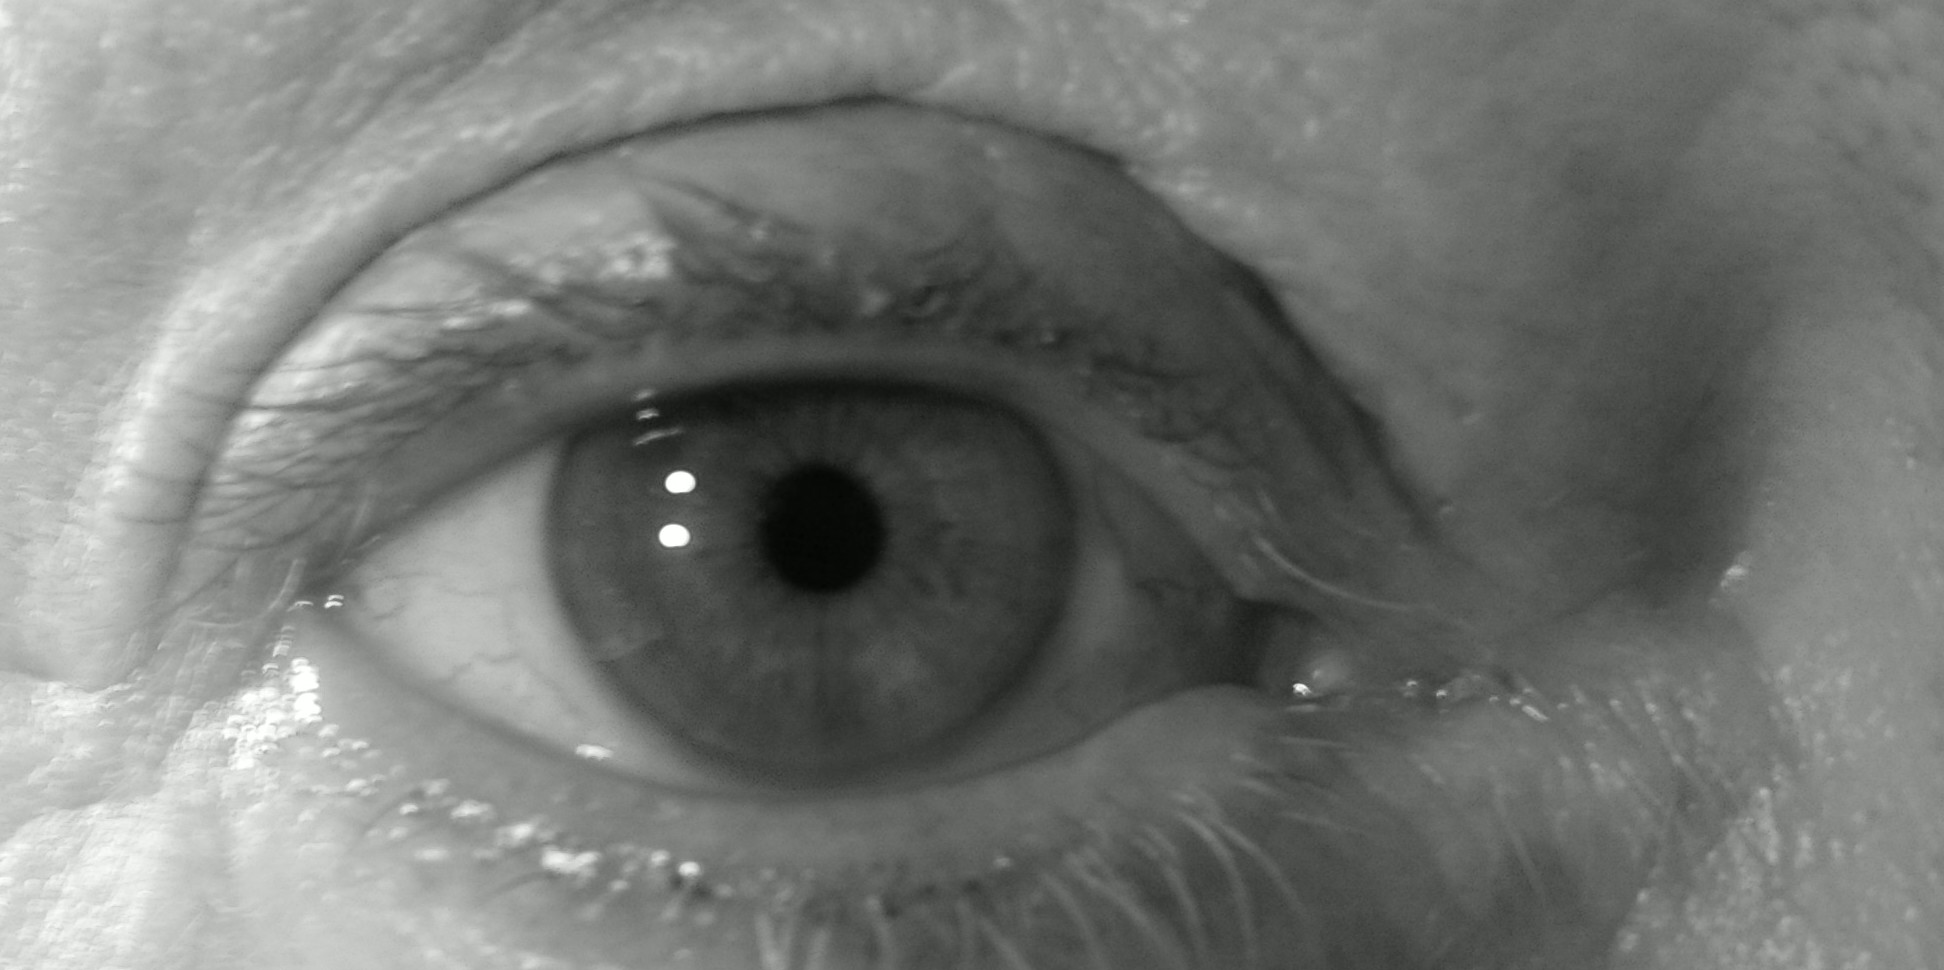 Augenoperation bei Grauem Star